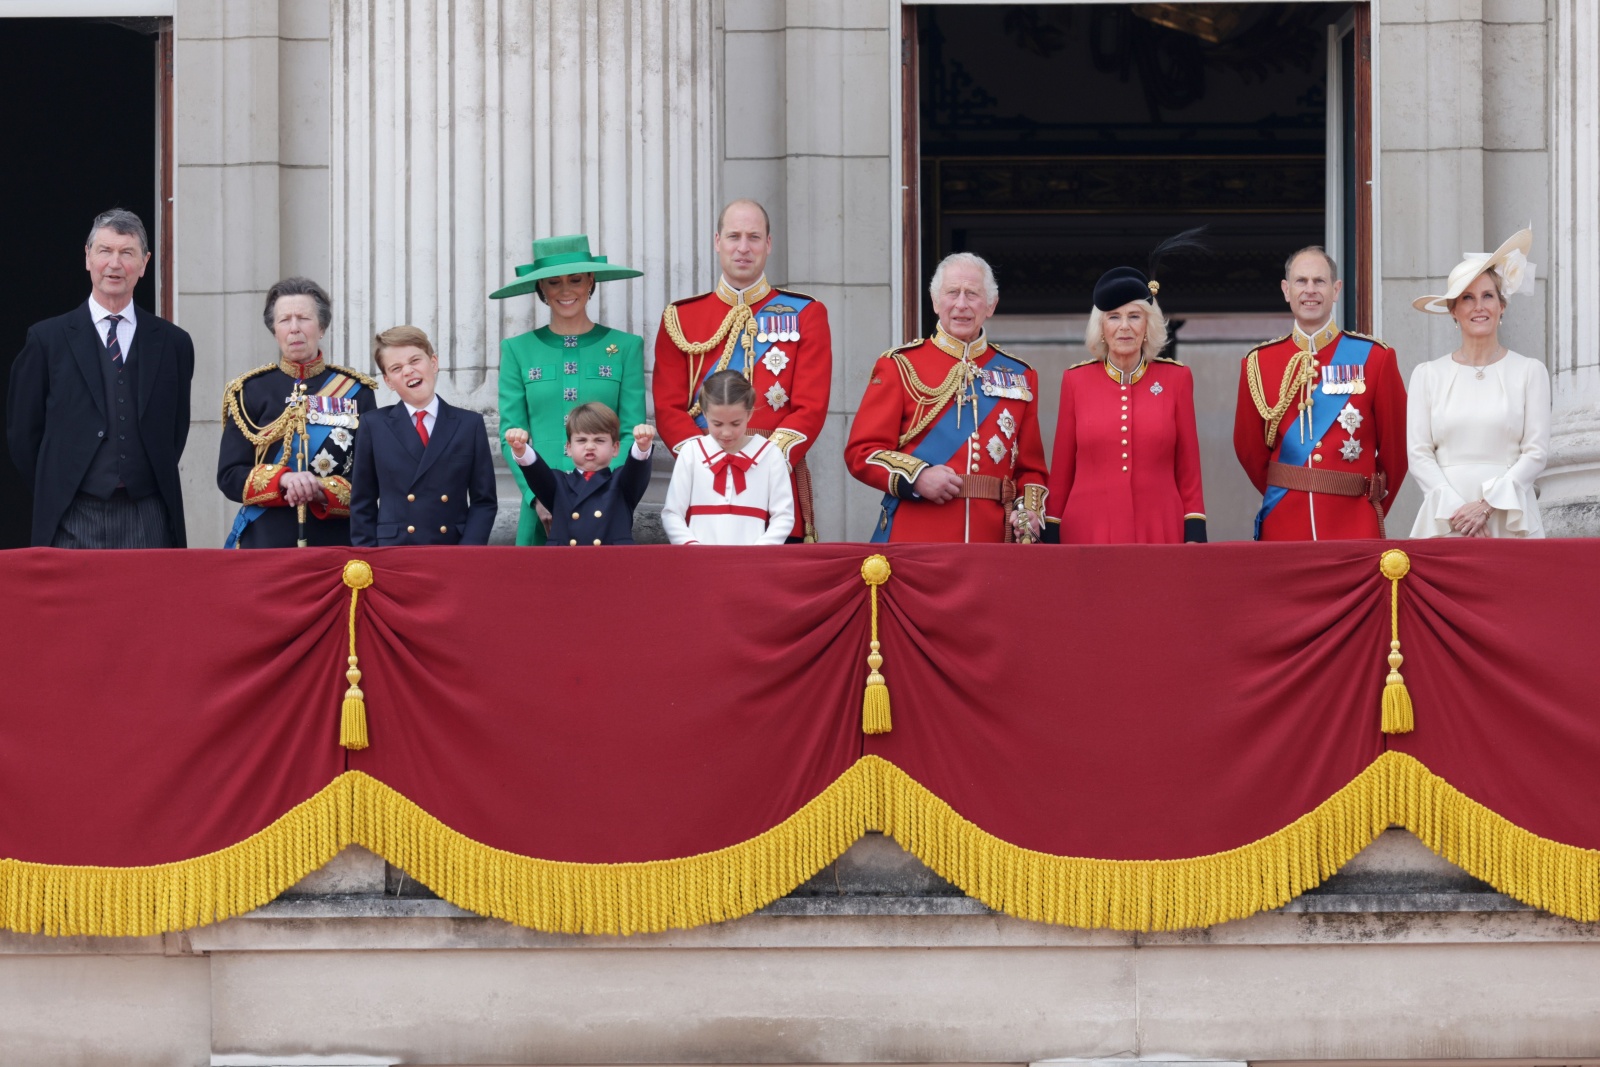 Reino Unido. Primeiro “Trooping the Colour” do rei Carlos III em Londres